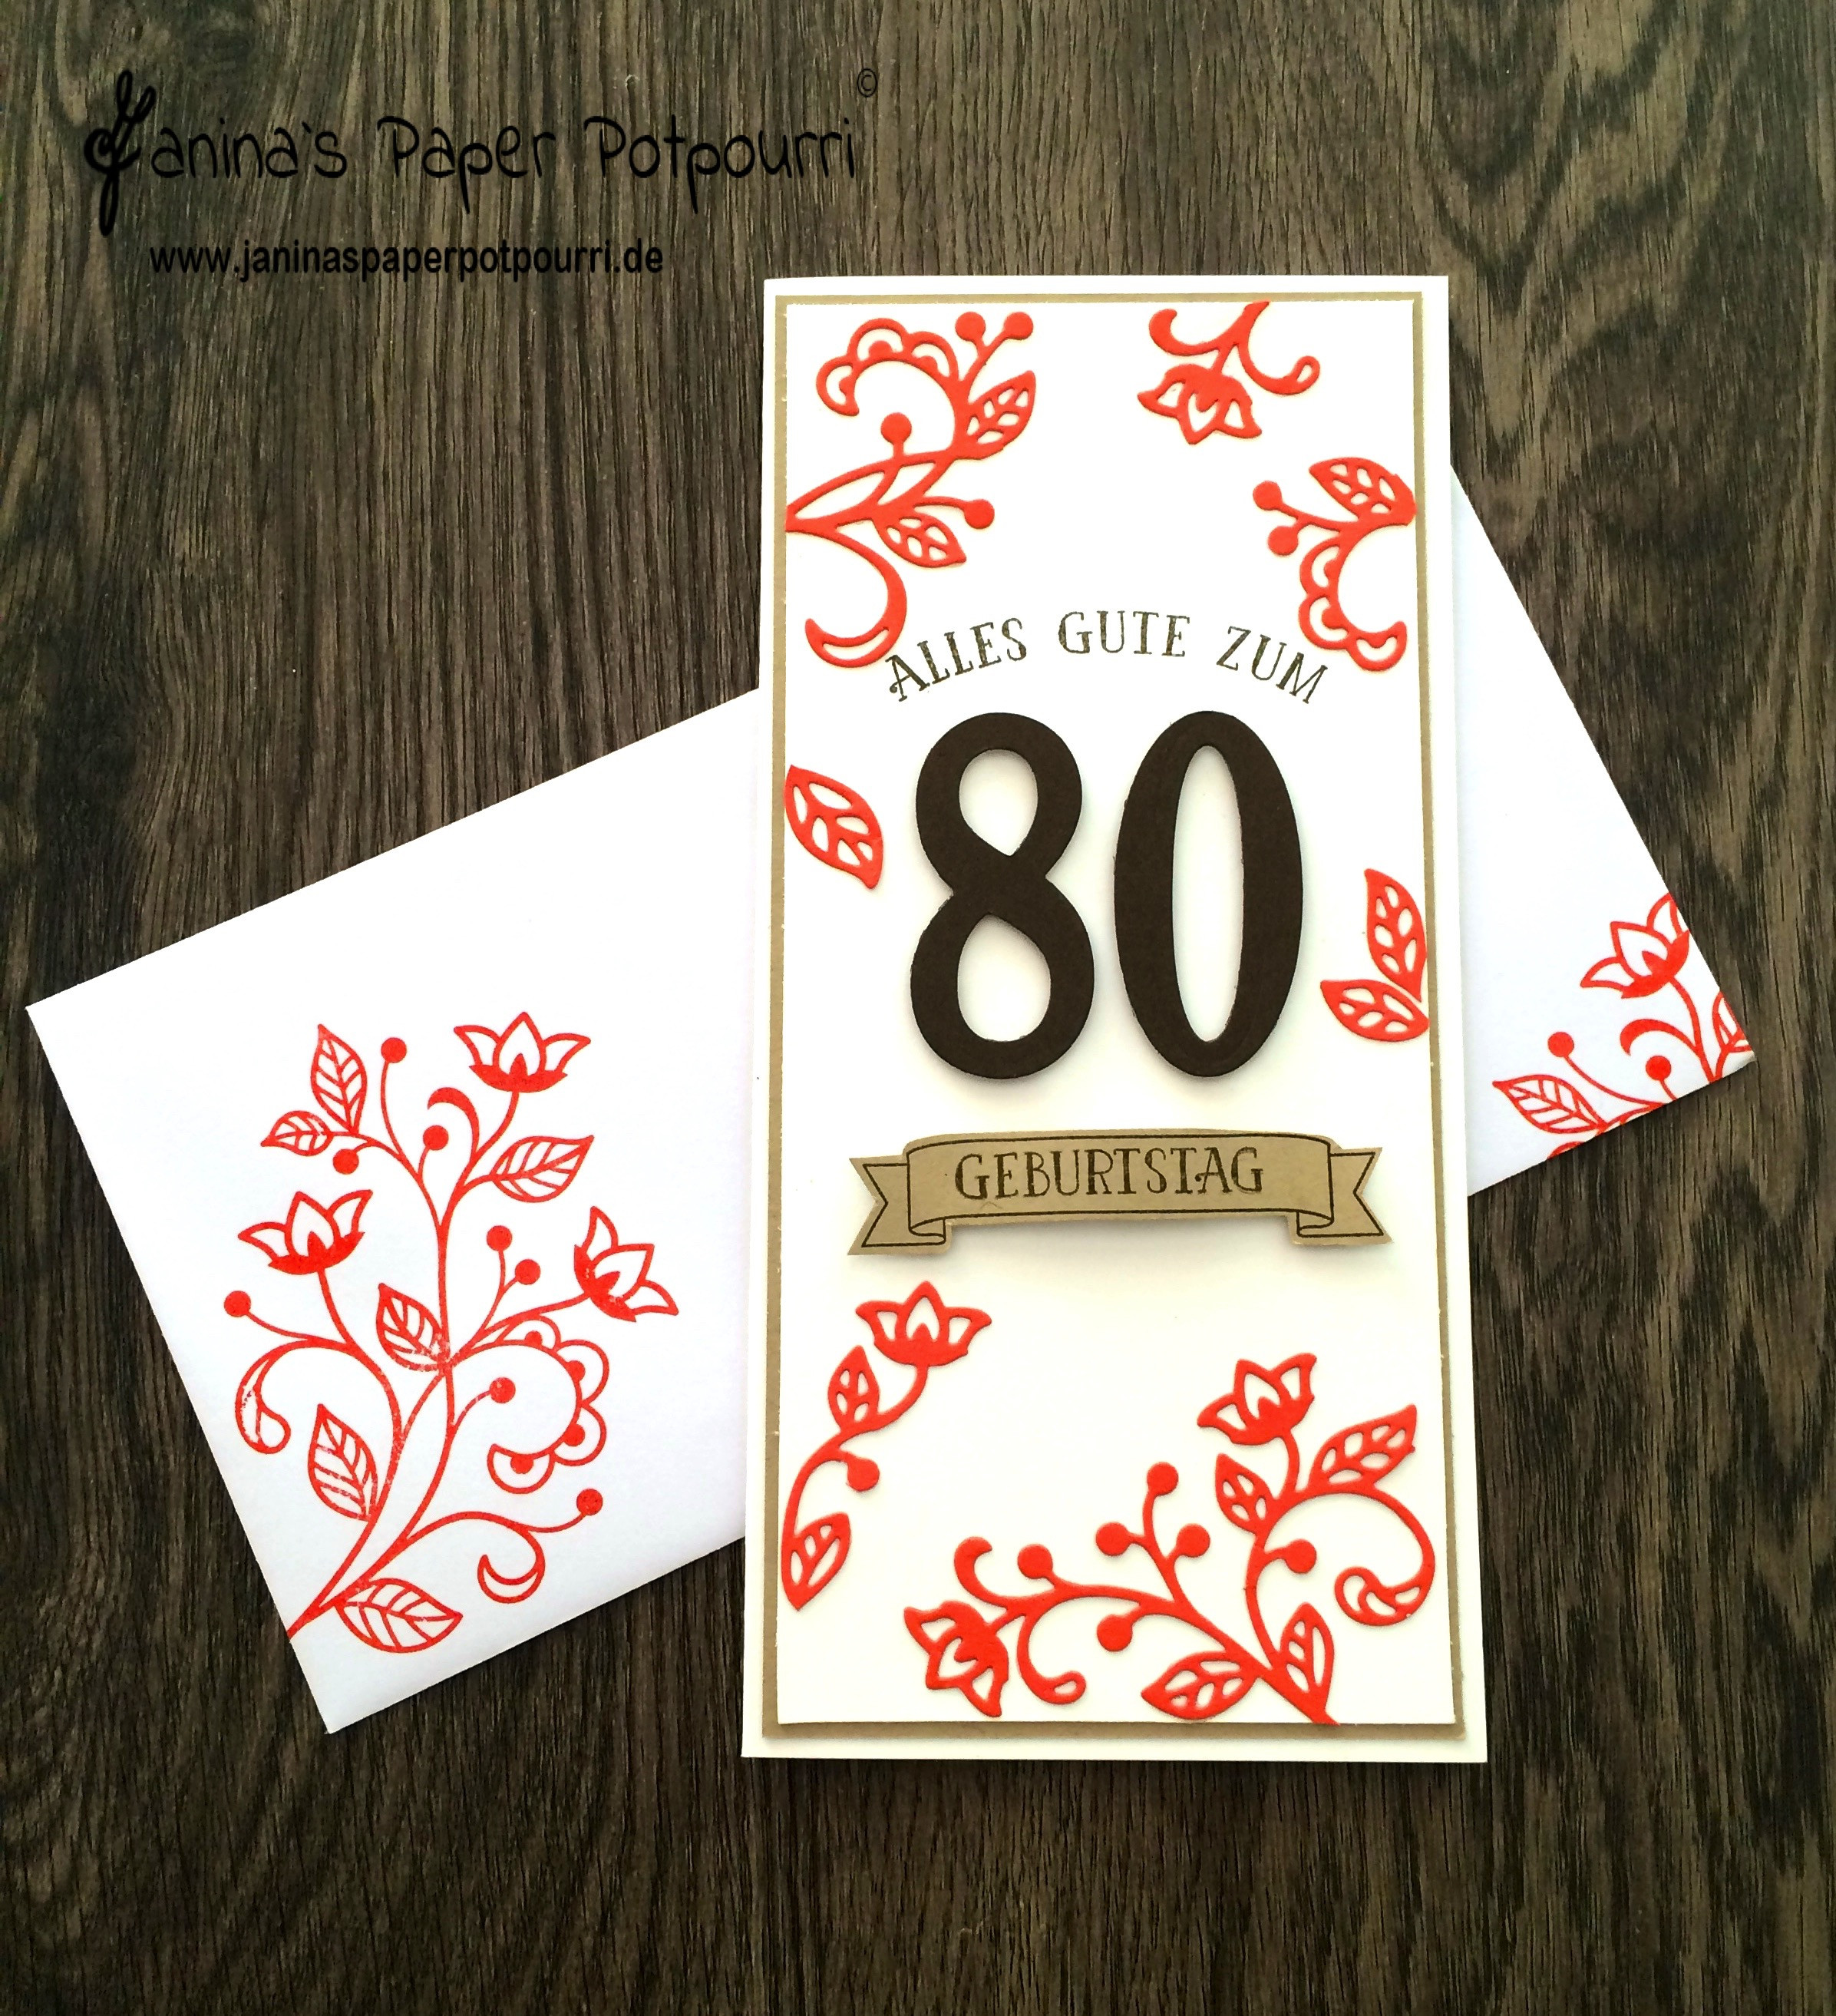 Geburtstagswünsche Zum 80. Geburtstag
 Blütenpoesie Karte zum 80 Geburtstag